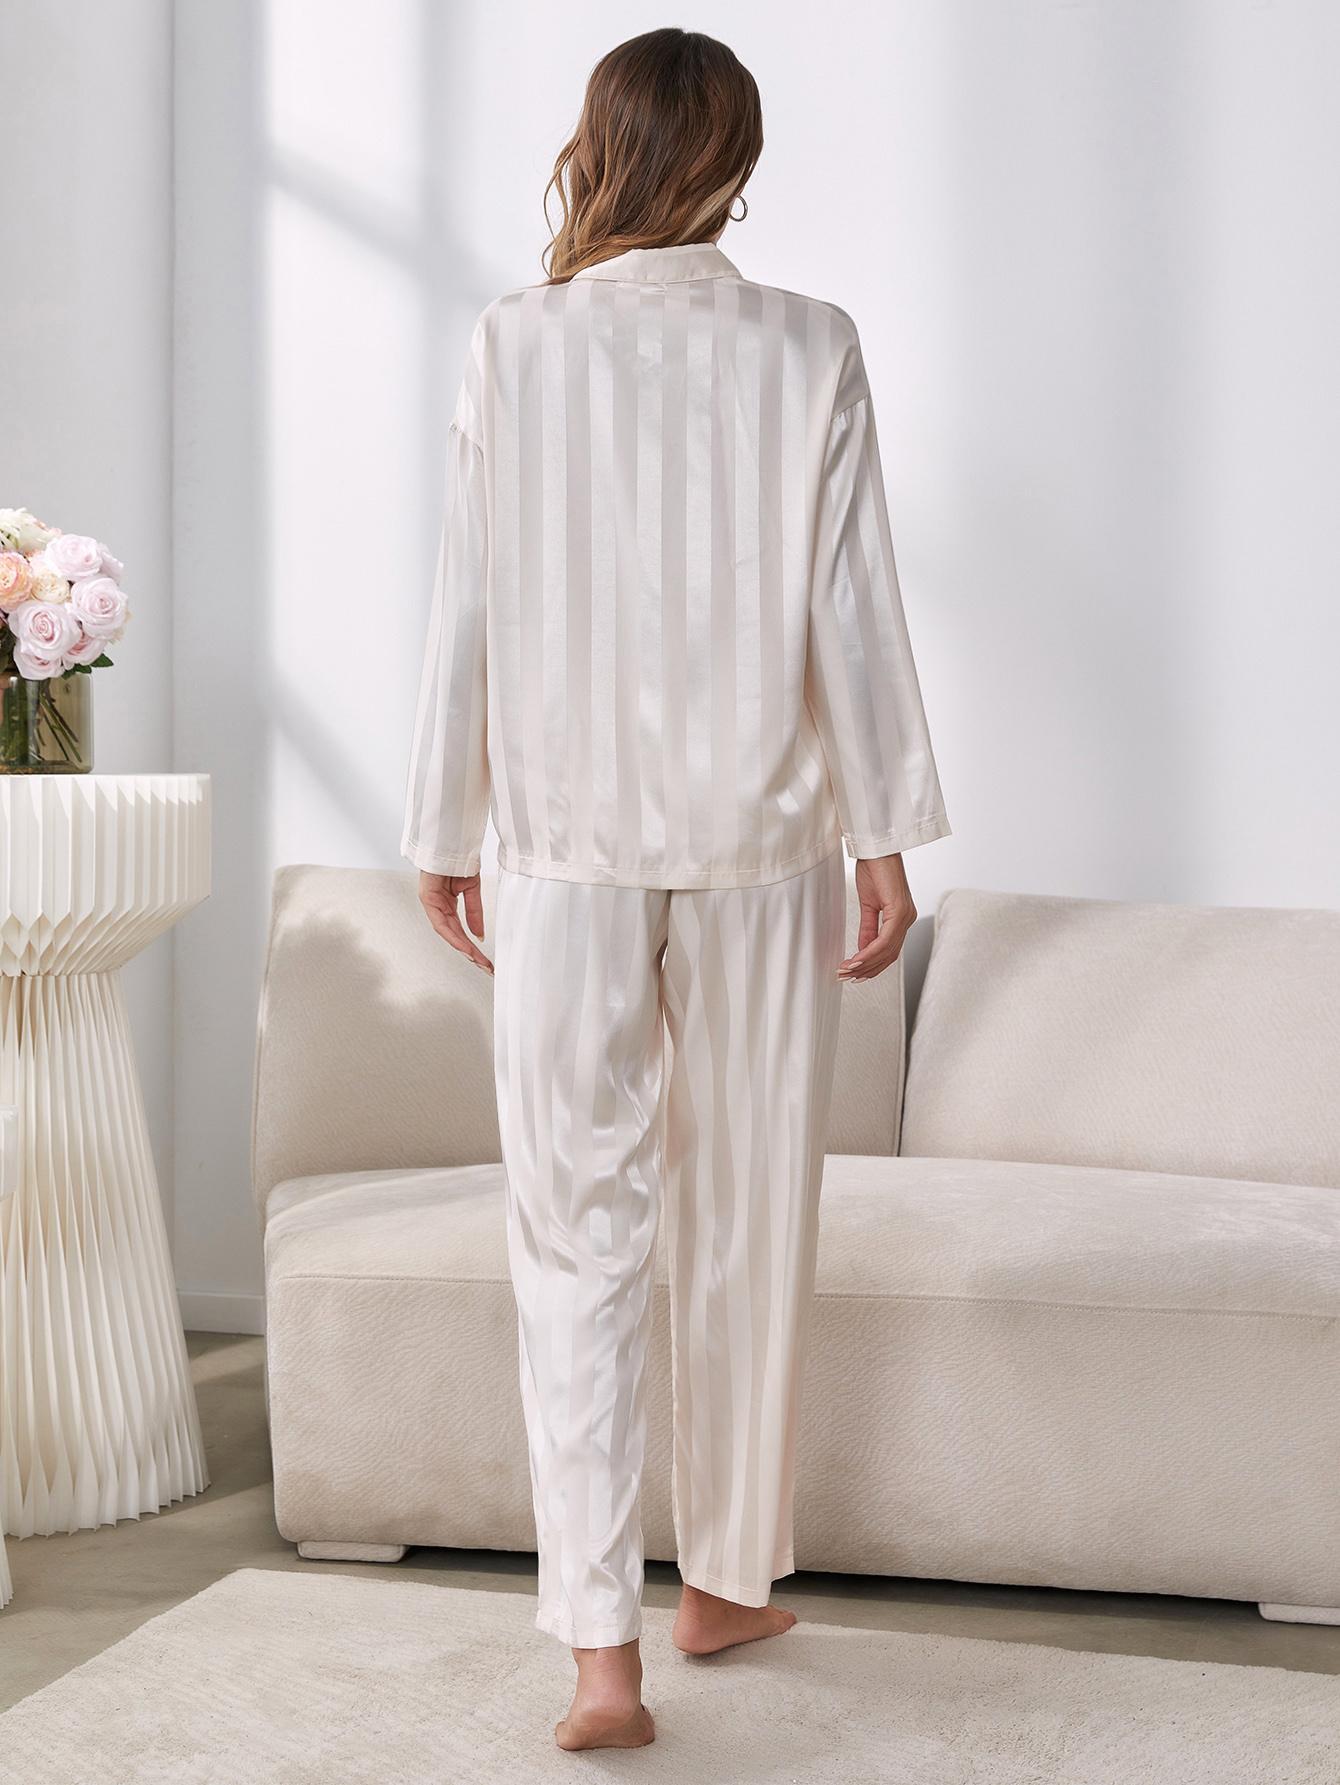 Button-Up Shirt and Pants Pajama Set - DromedarShop.com Online Boutique